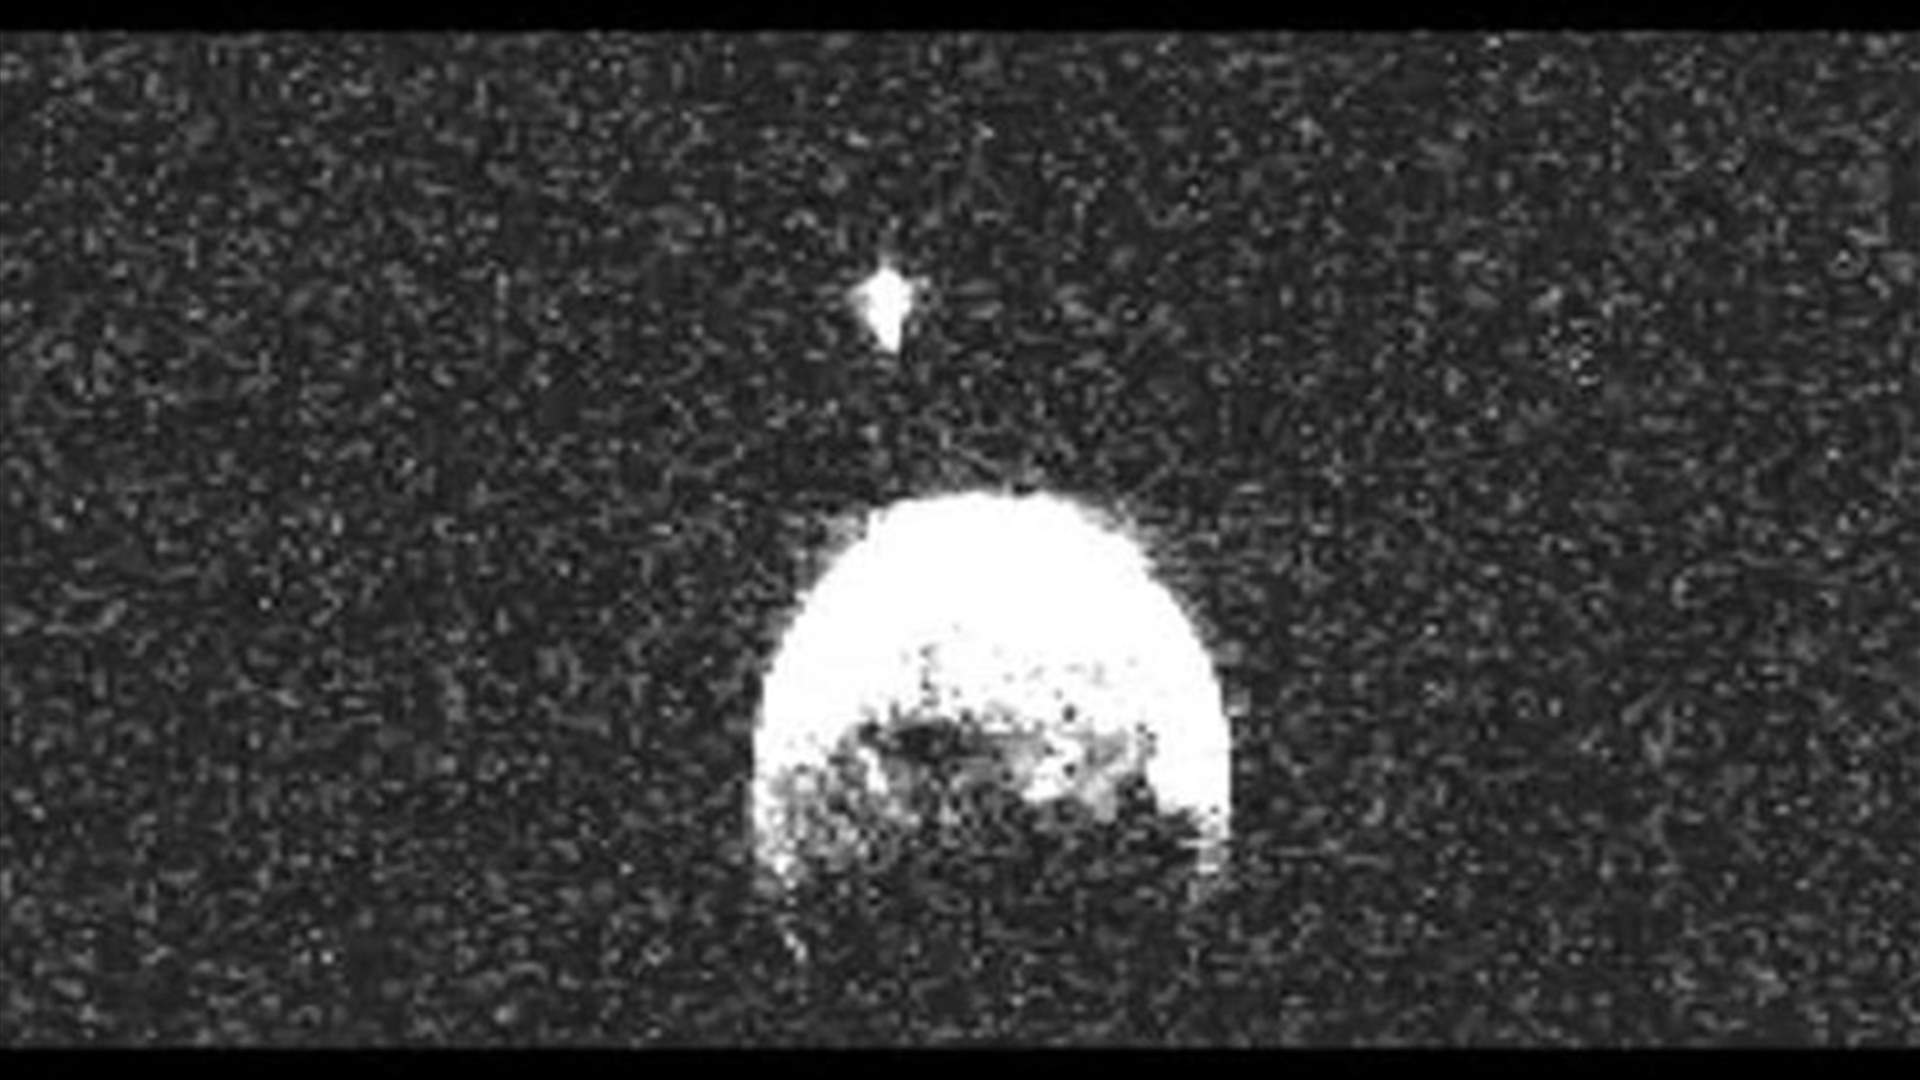 الكويكب الذي مر قرب الارض يوم الاثنين لديه قمر سيار